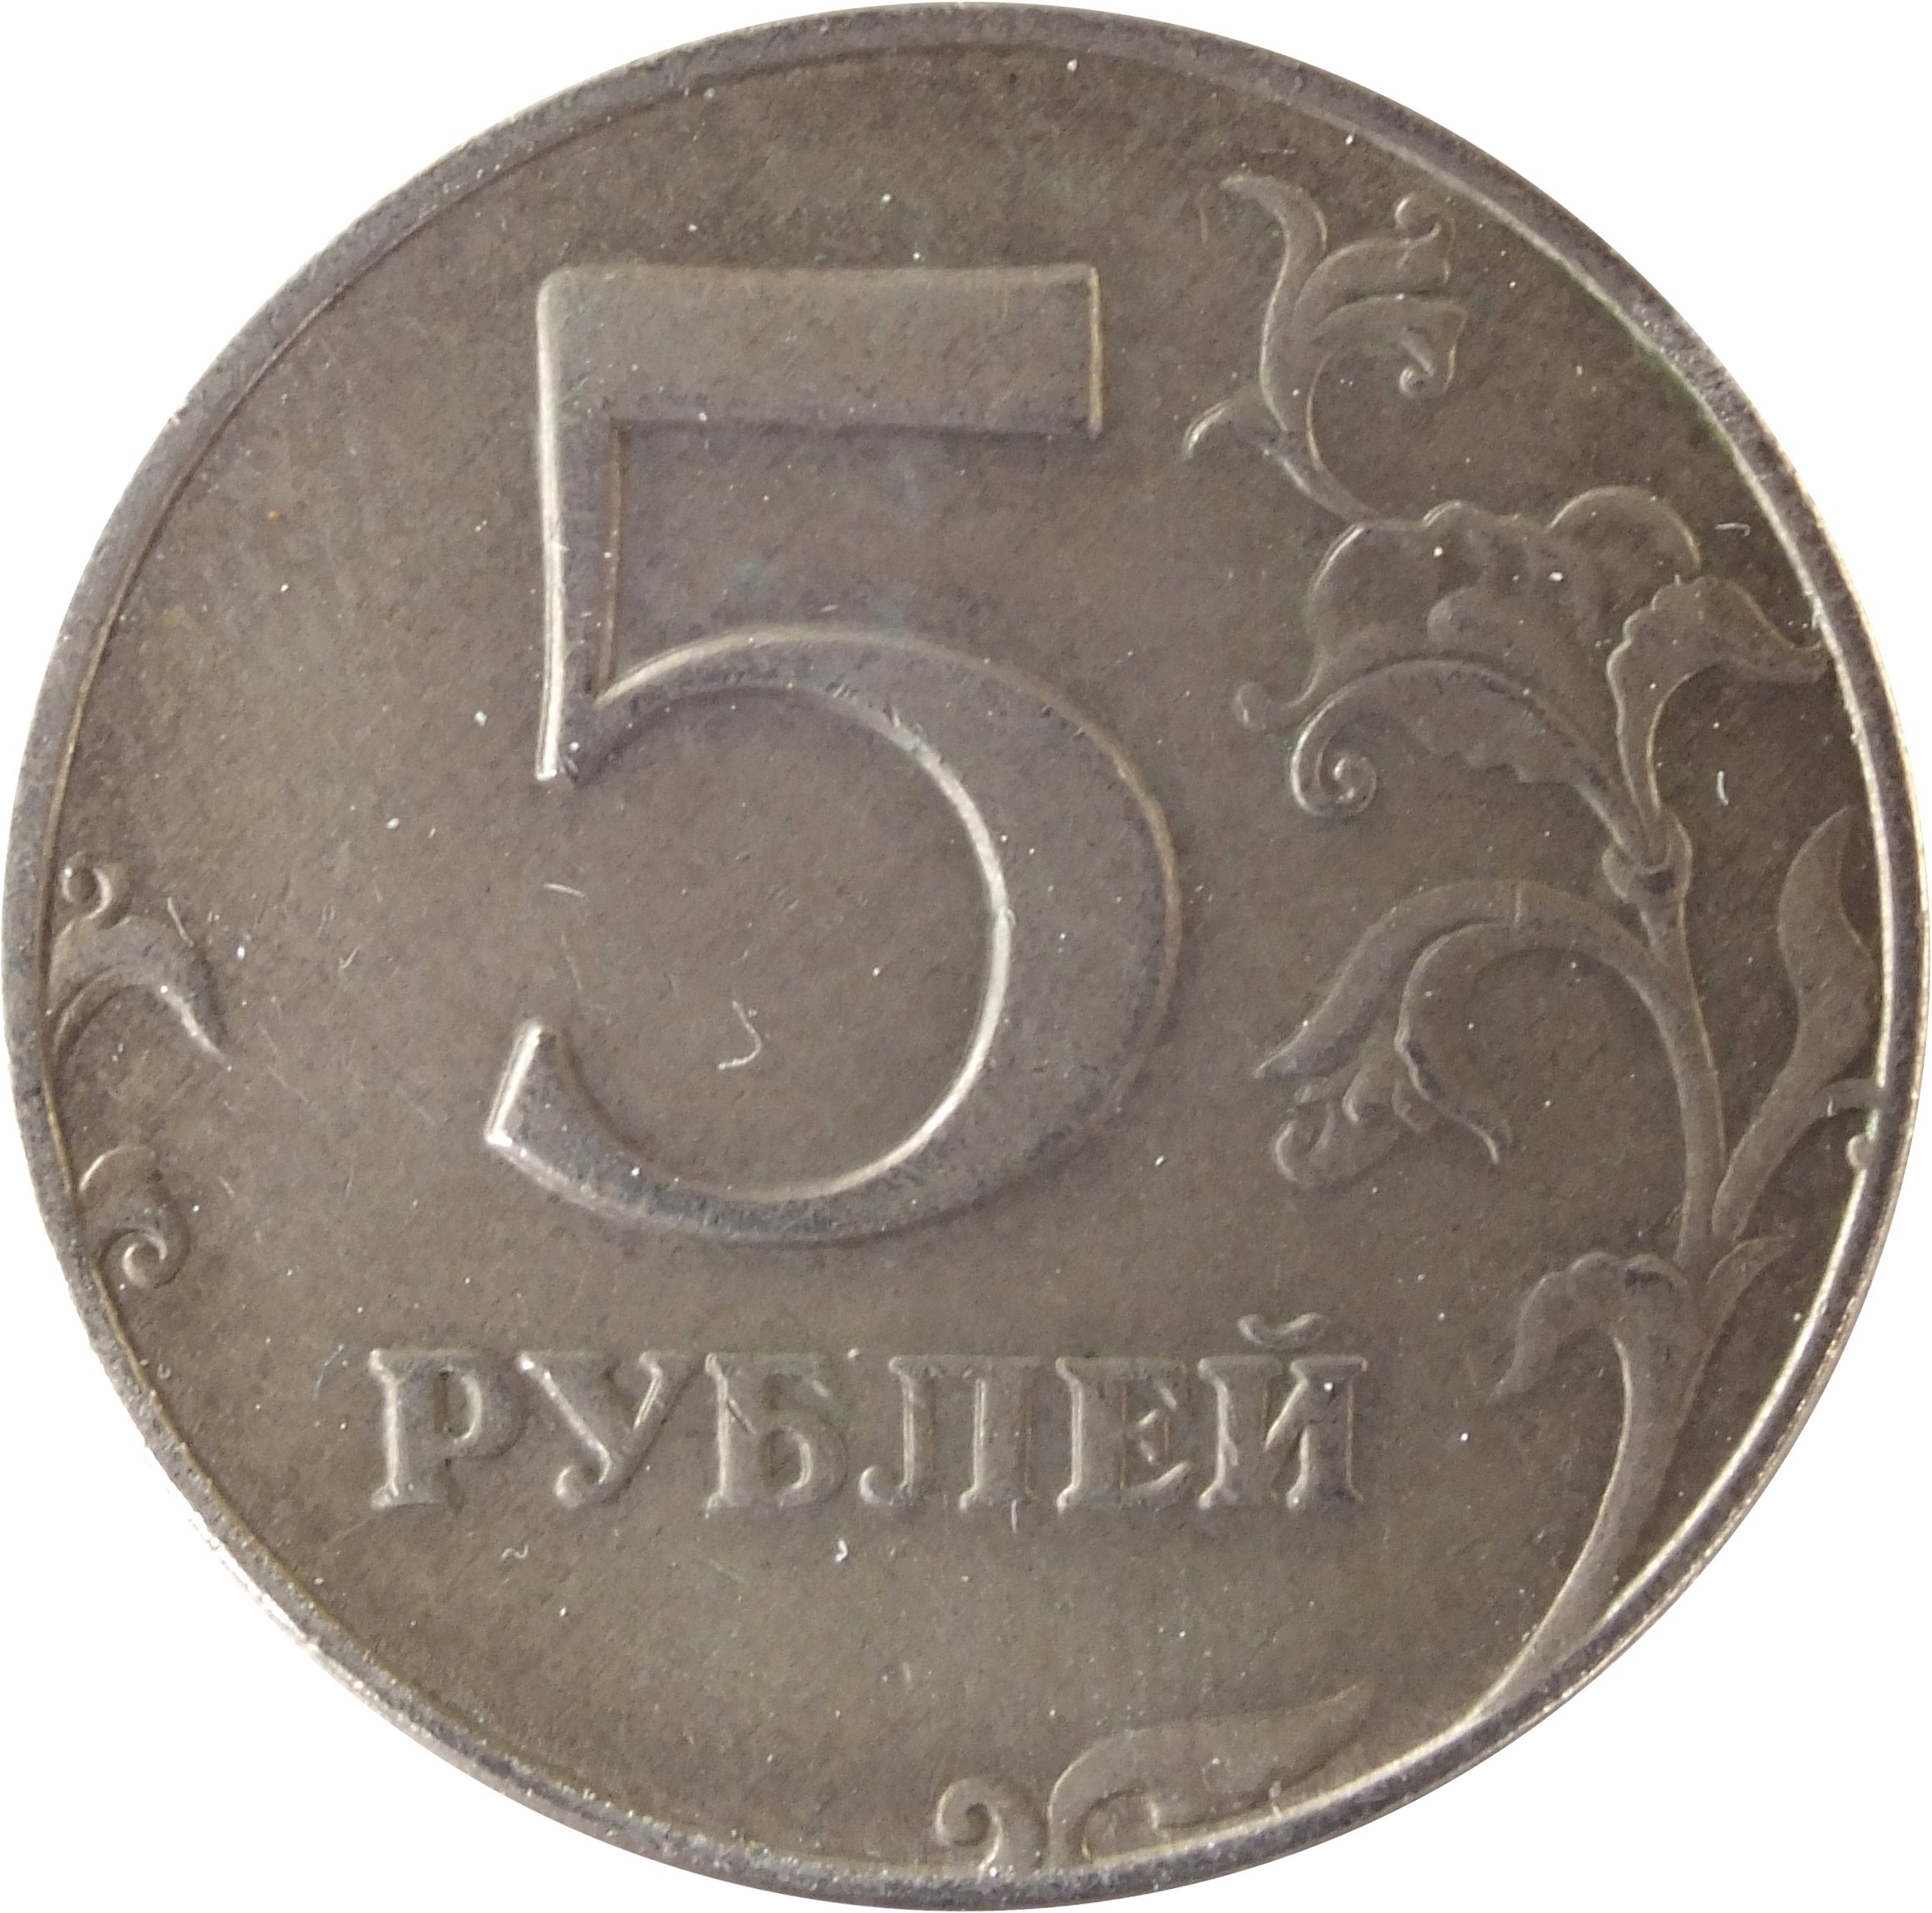 Сообщение 5 рублей. Монета 5 рублей. Монета 5 рублей реверс. Монета "5 рублей 1907 года". Монета 5 рублей без фона.